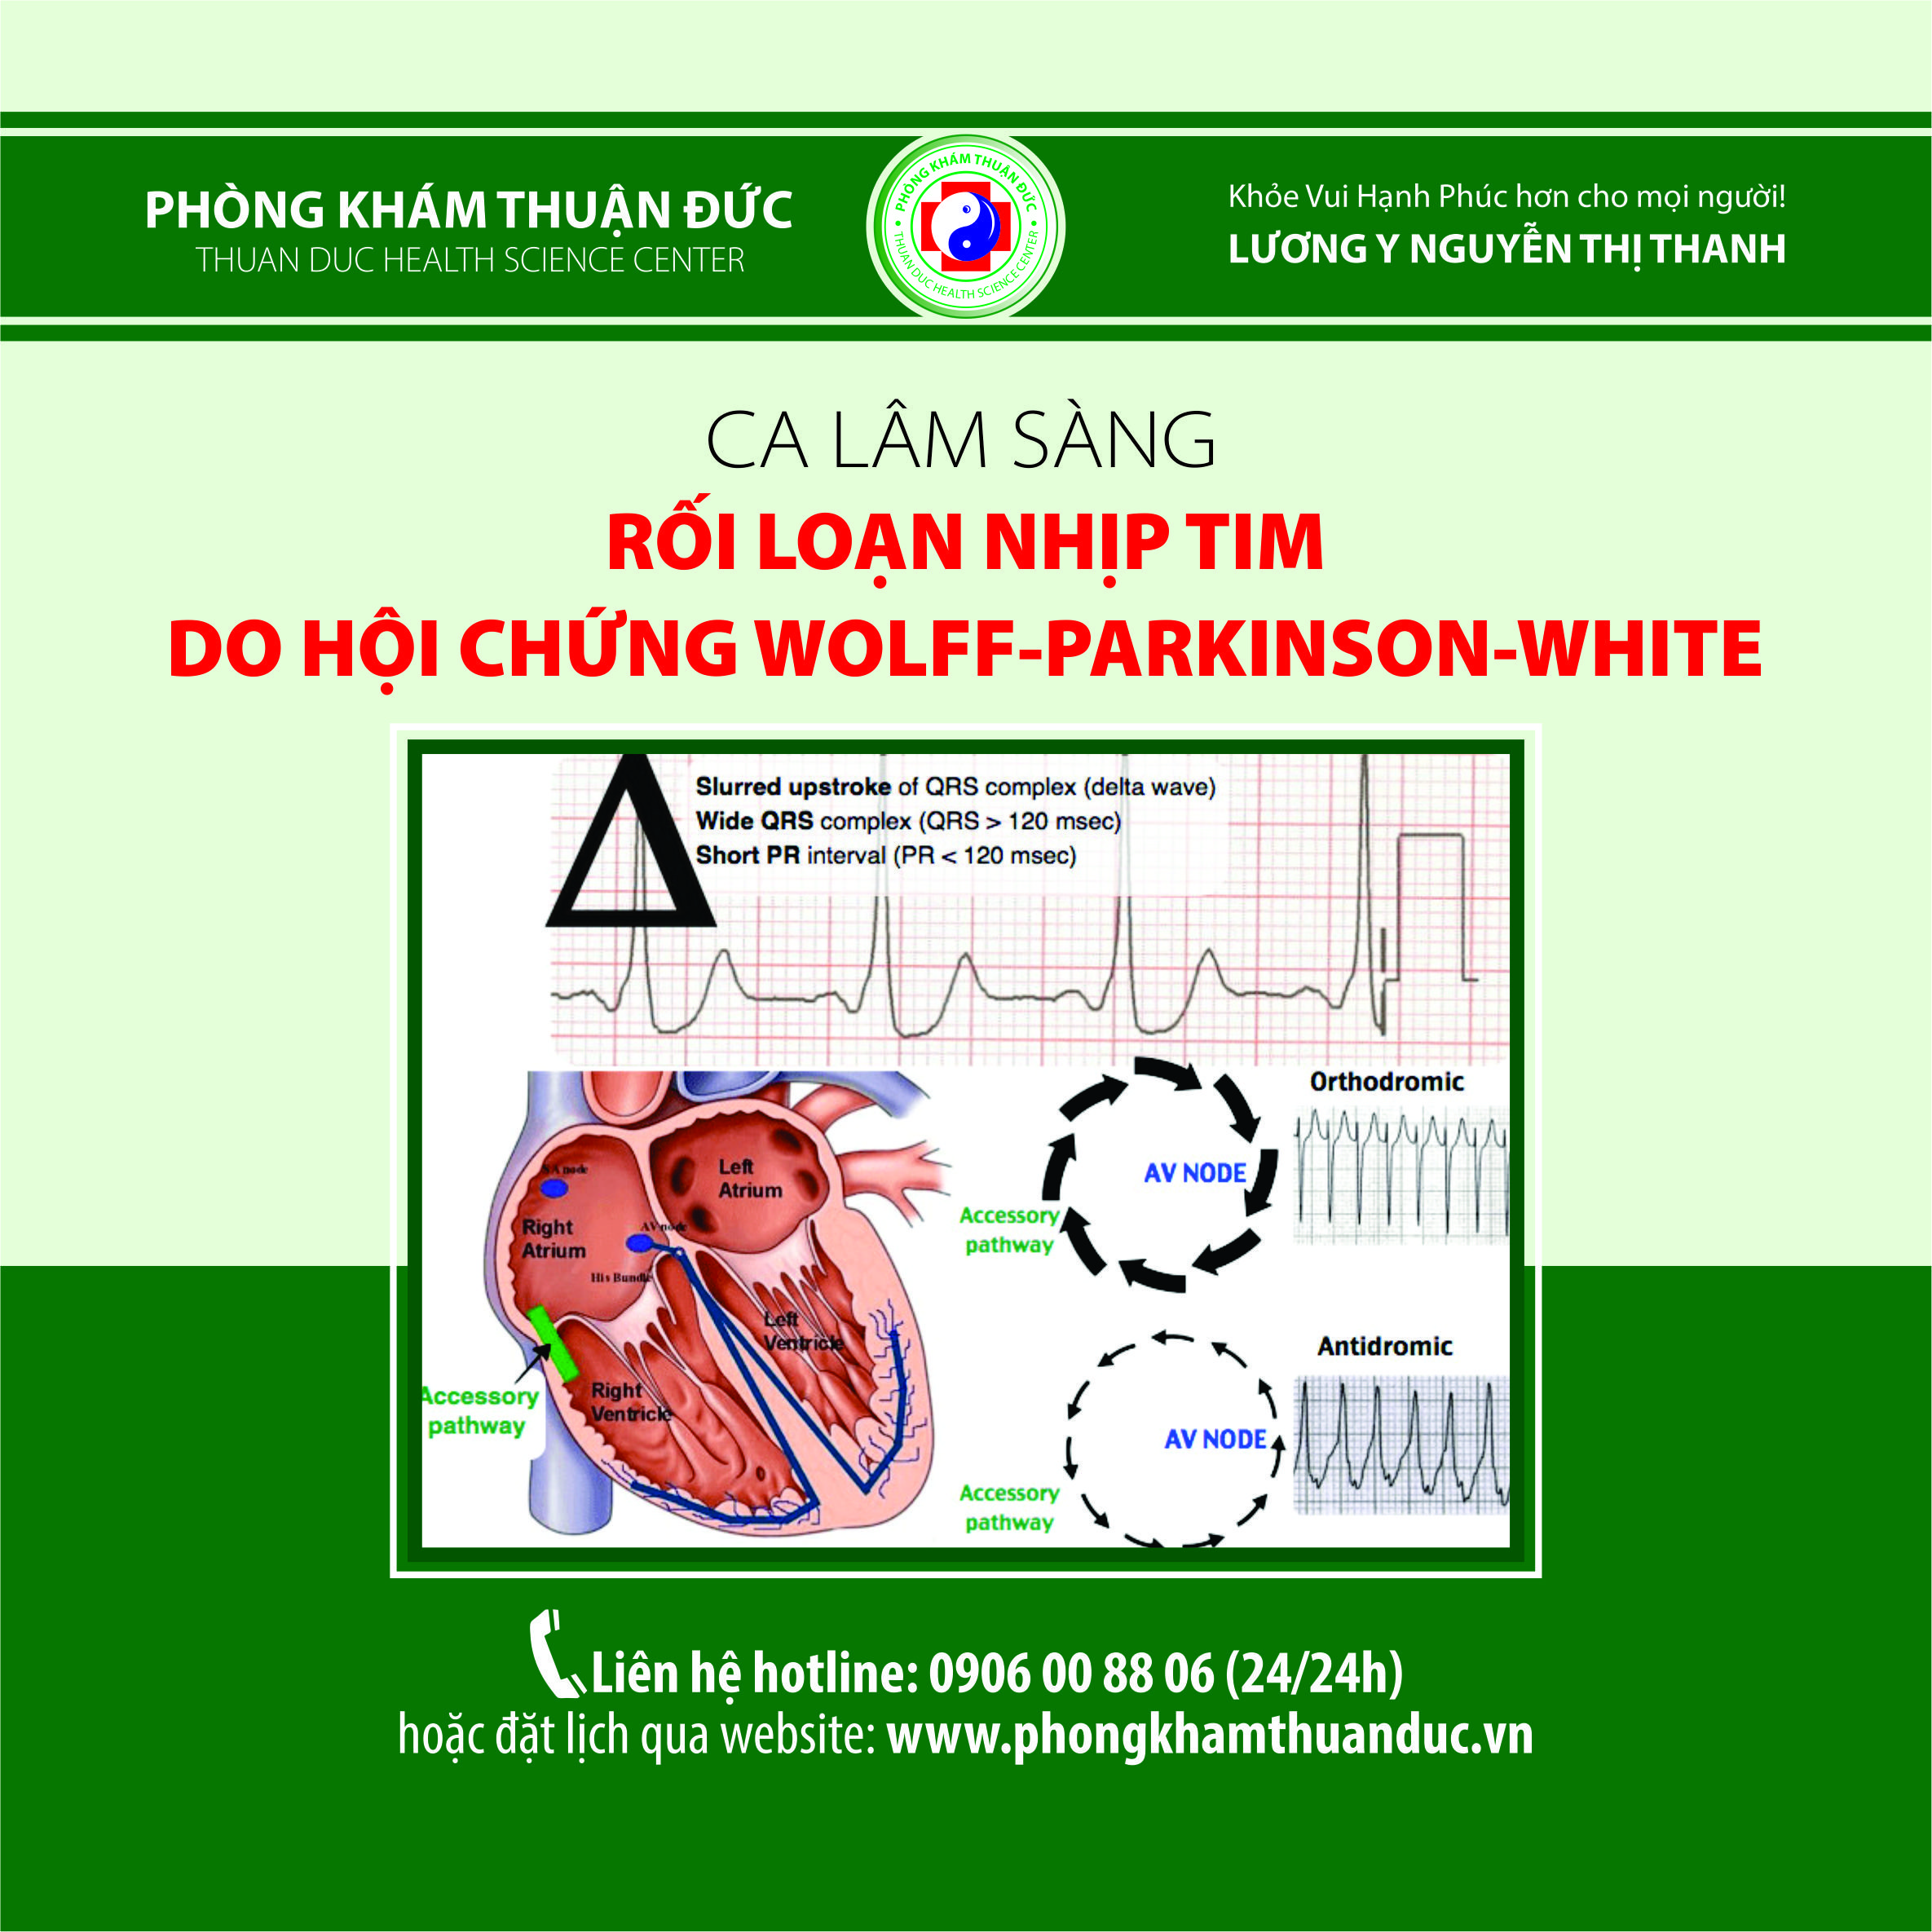 Ca lâm sàng rối loạn nhịp tim do hội chứng Wolff-Parkinson-White